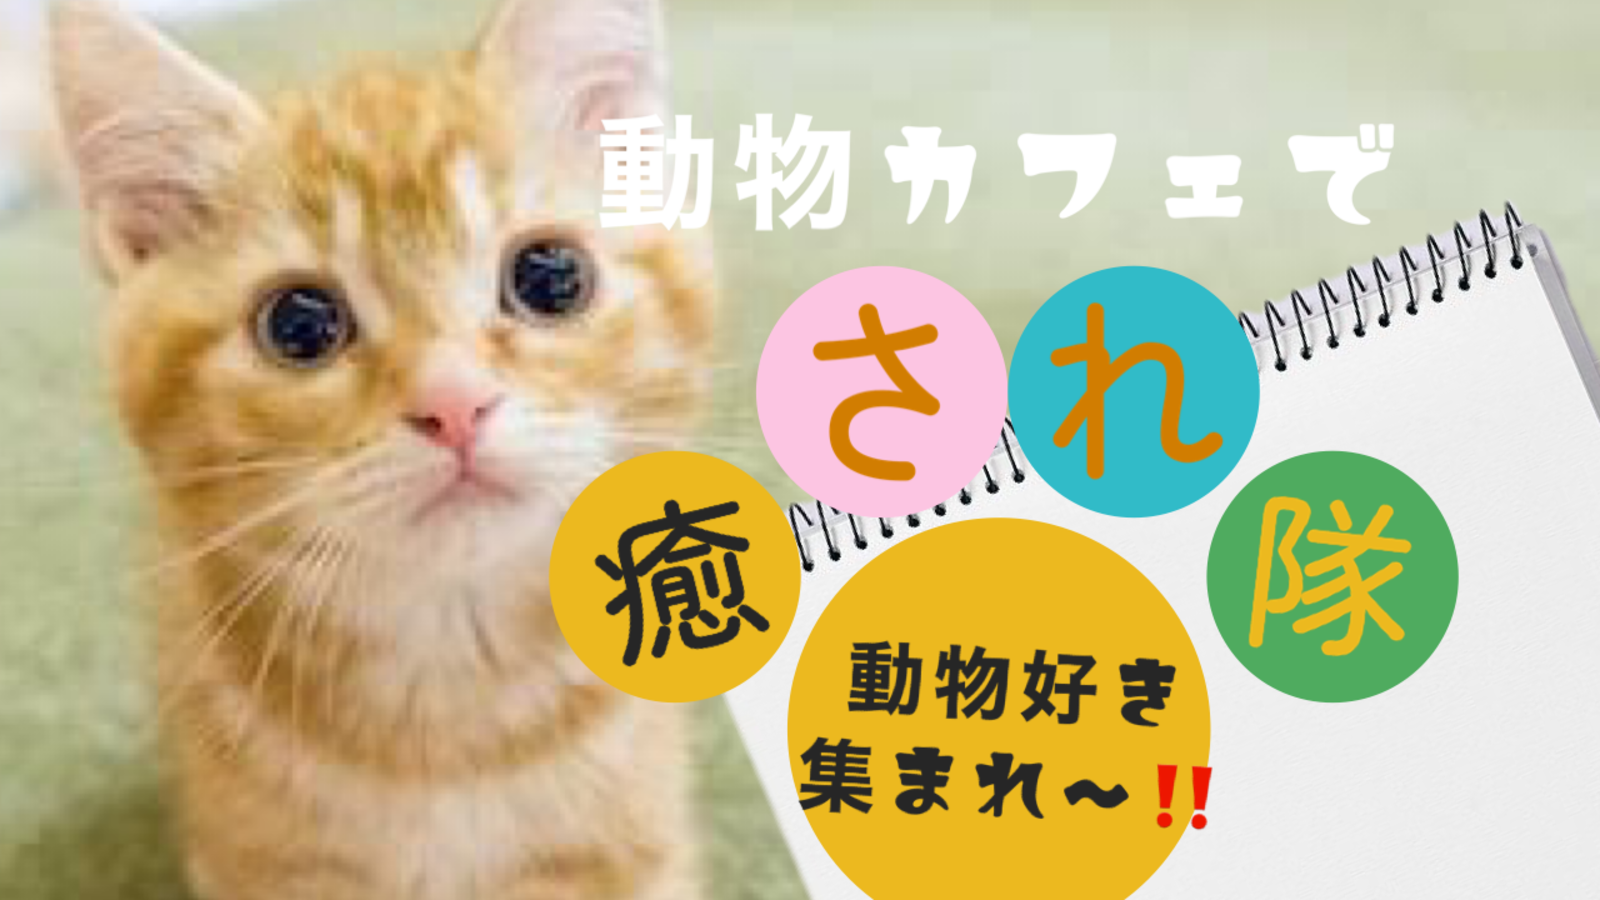 【動物カフェ🐶×新宿】週末に可愛い動物たちに会って、モフモフ癒されよう‼️動物好き集まれ〜